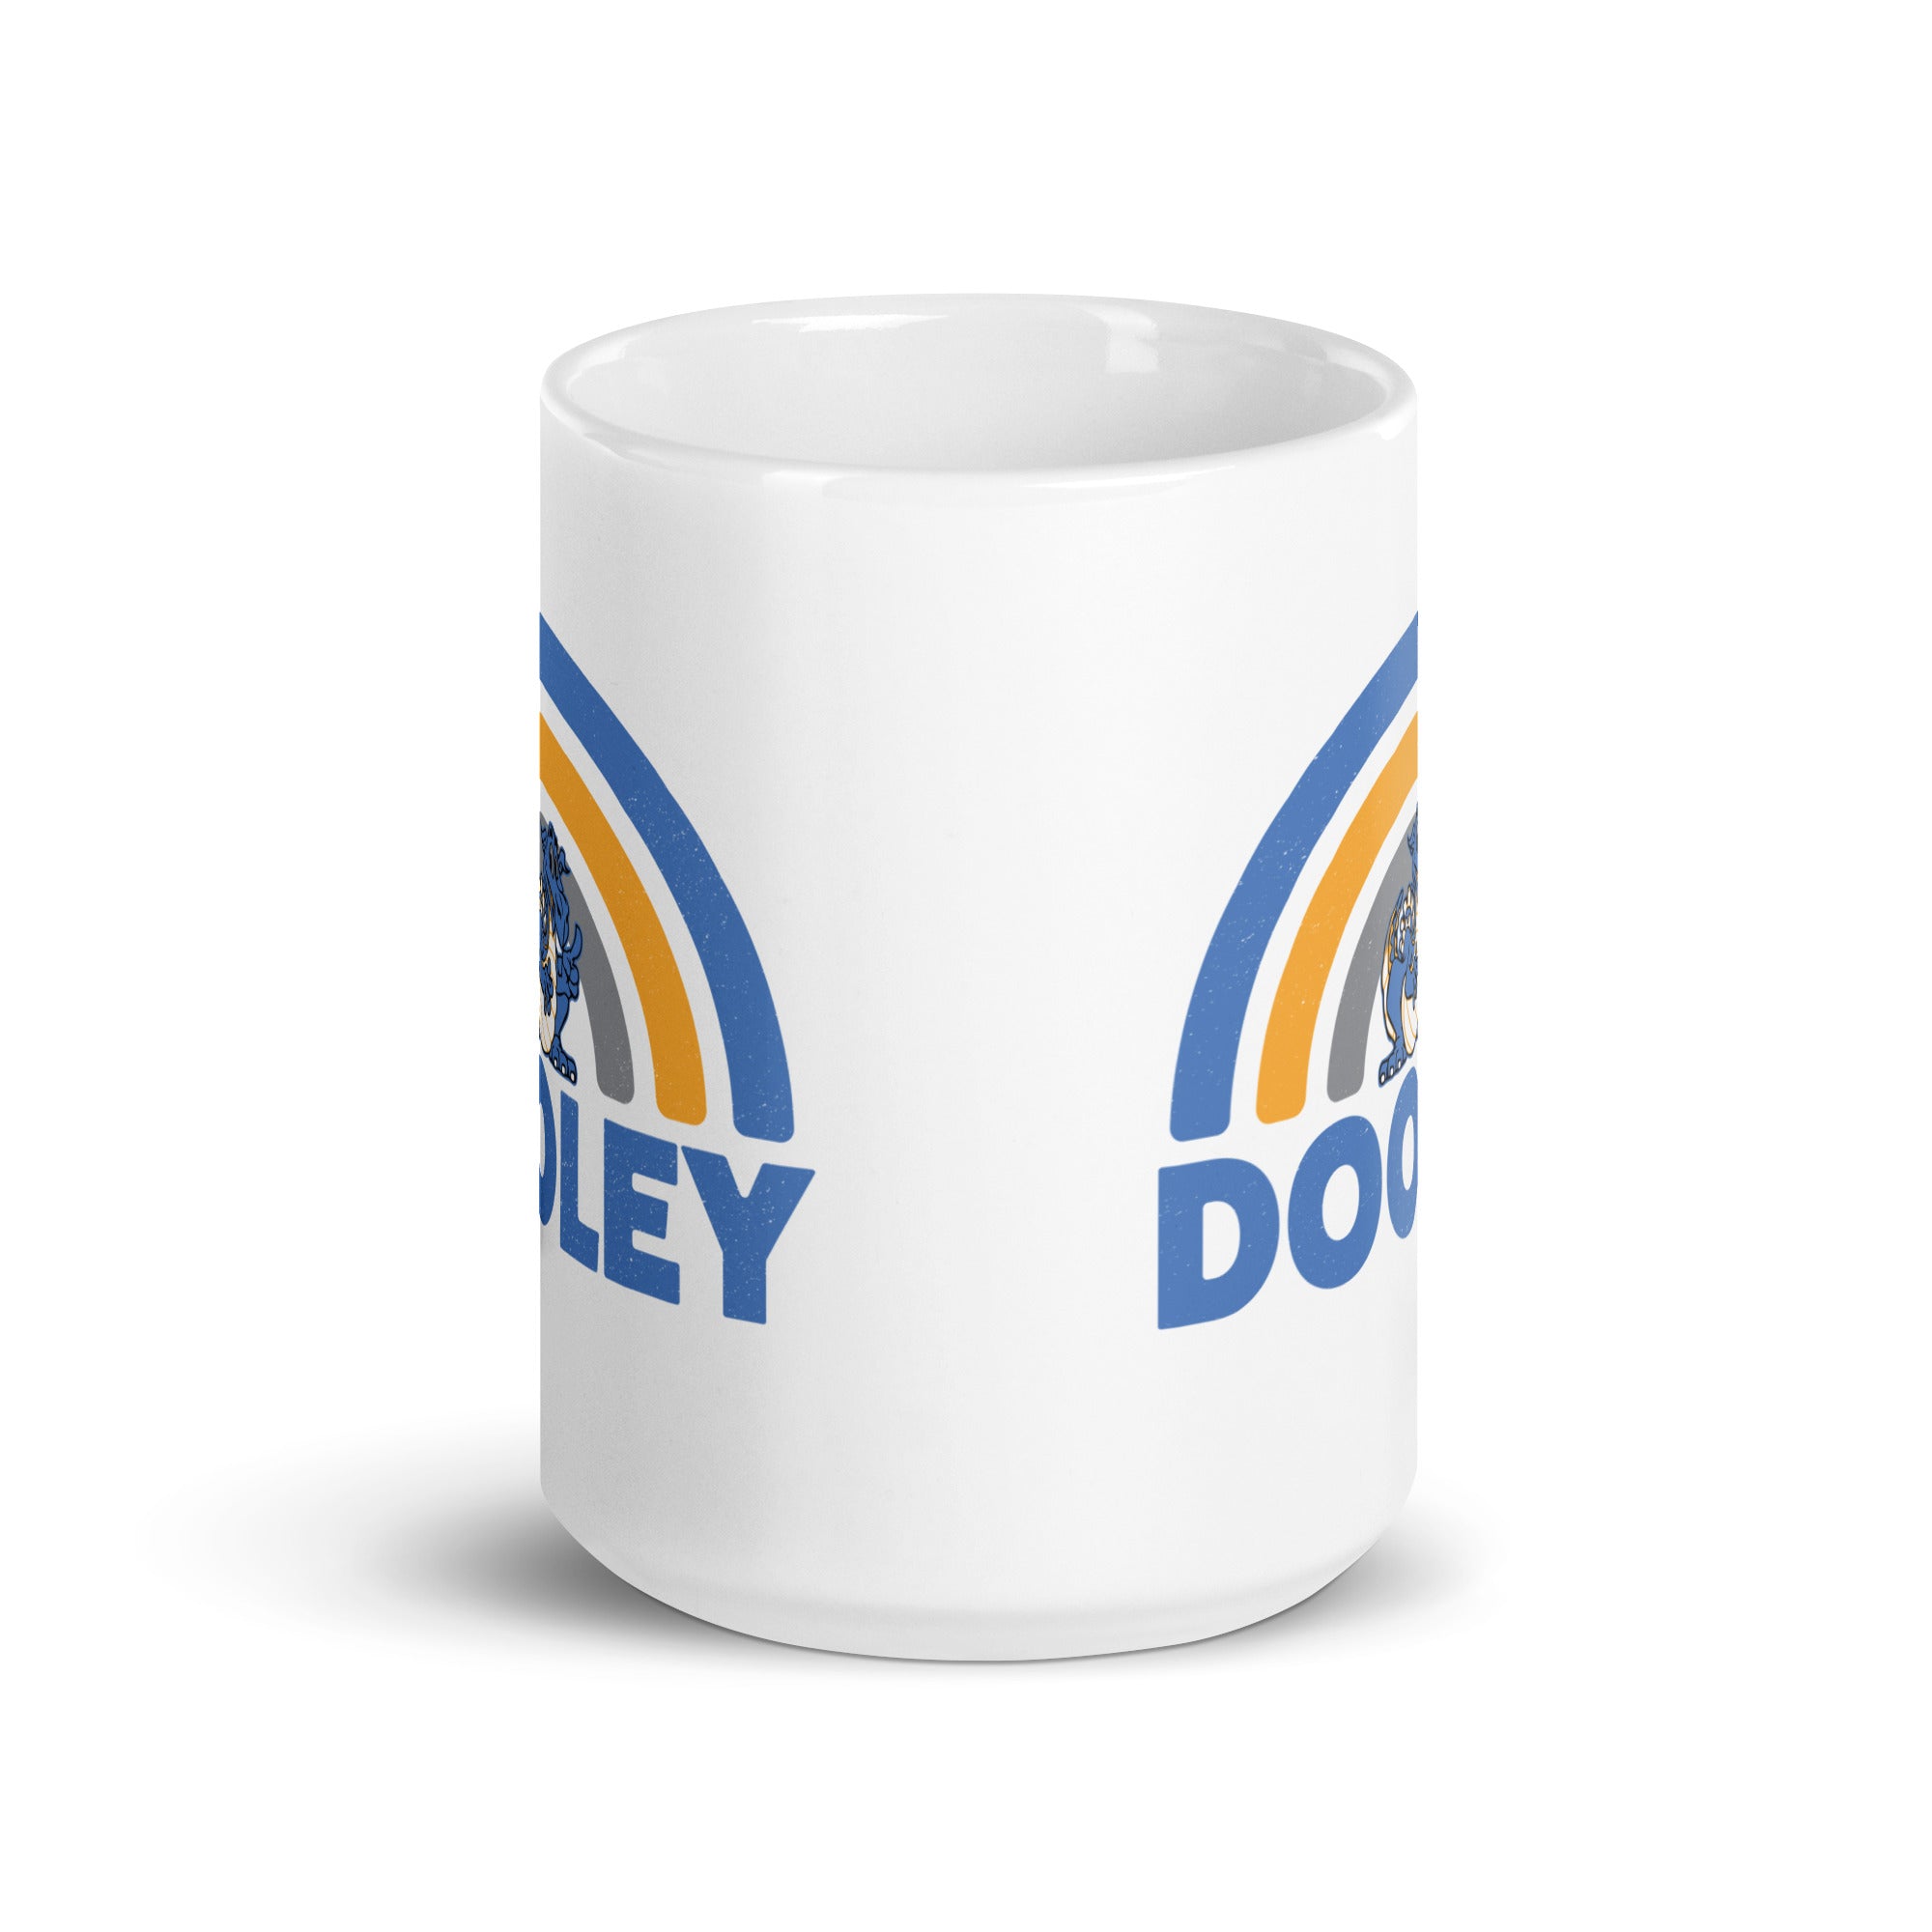 D54 White glossy mug